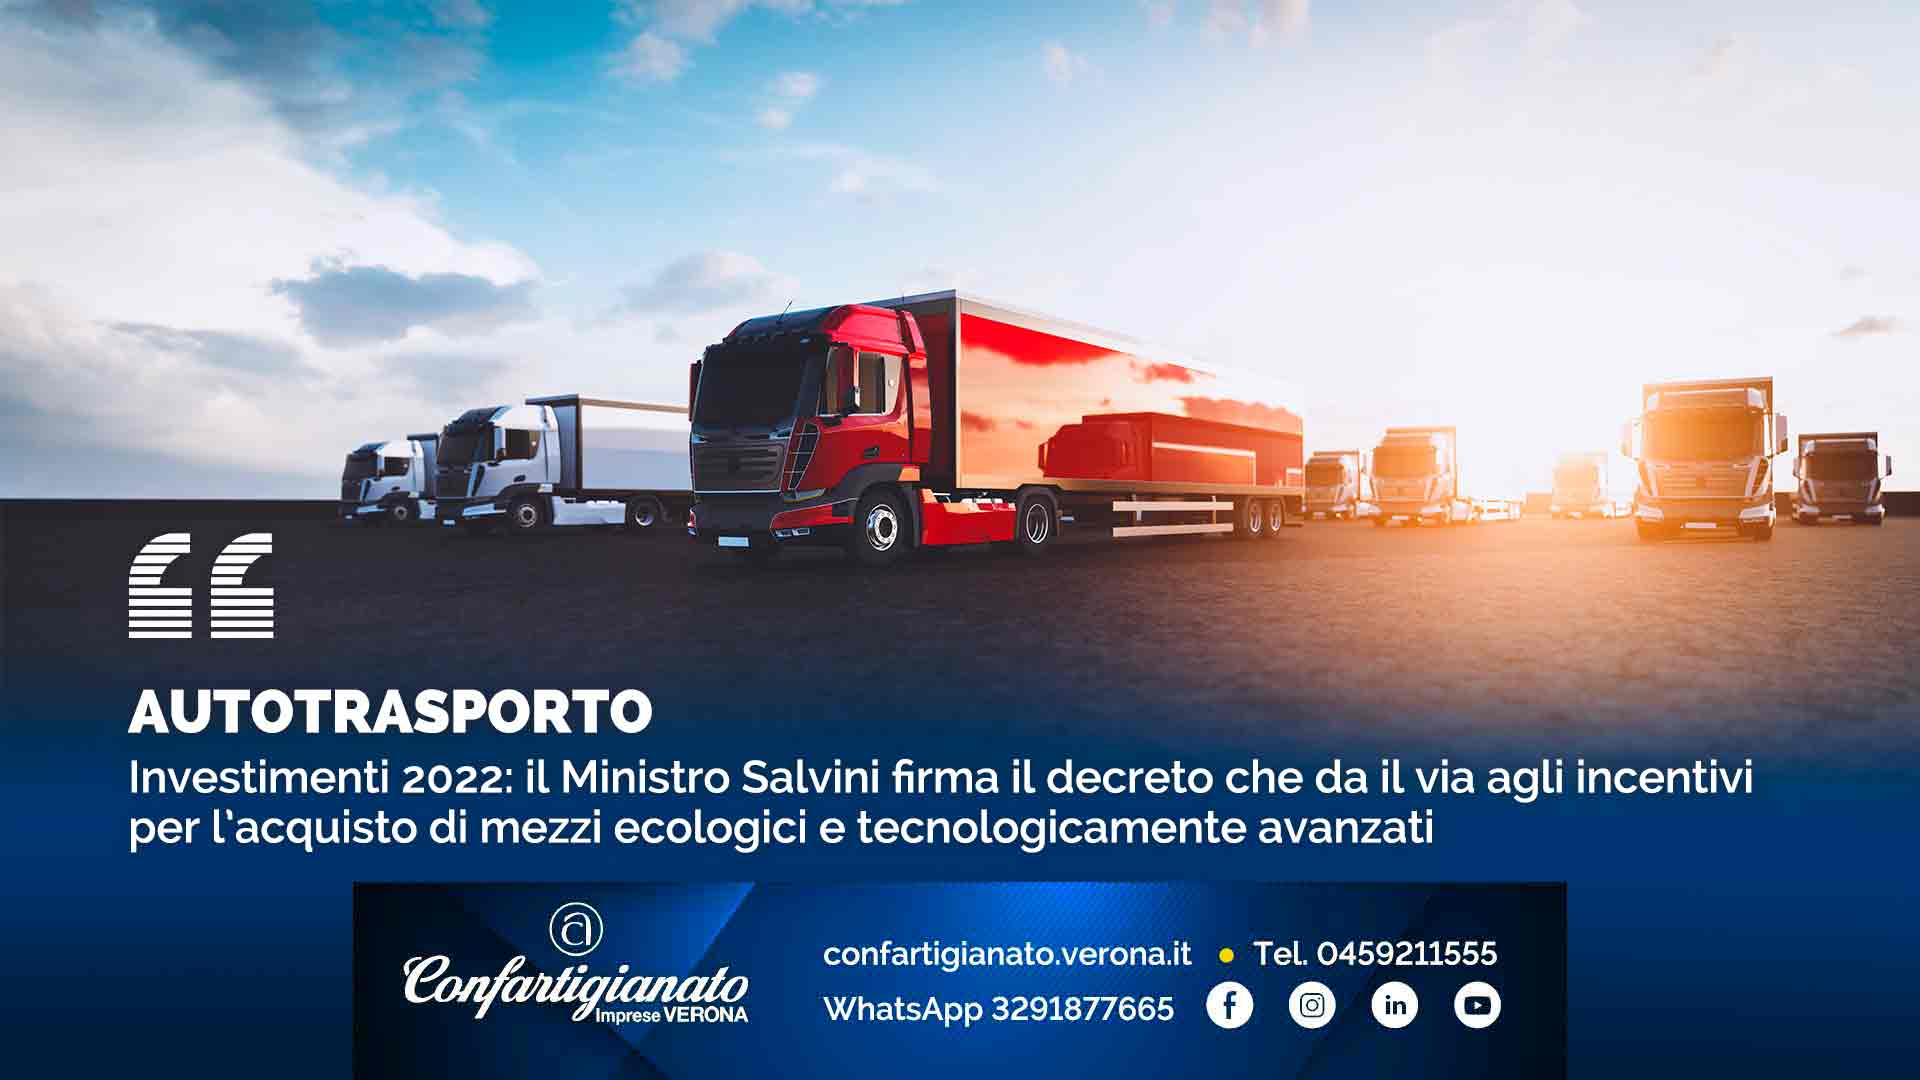 AUTOTRASPORTO – Investimenti 2022: il Ministro Salvini firma il decreto che da il via agli incentivi per l’acquisto di mezzi ecologici e tecnologicamente avanzati